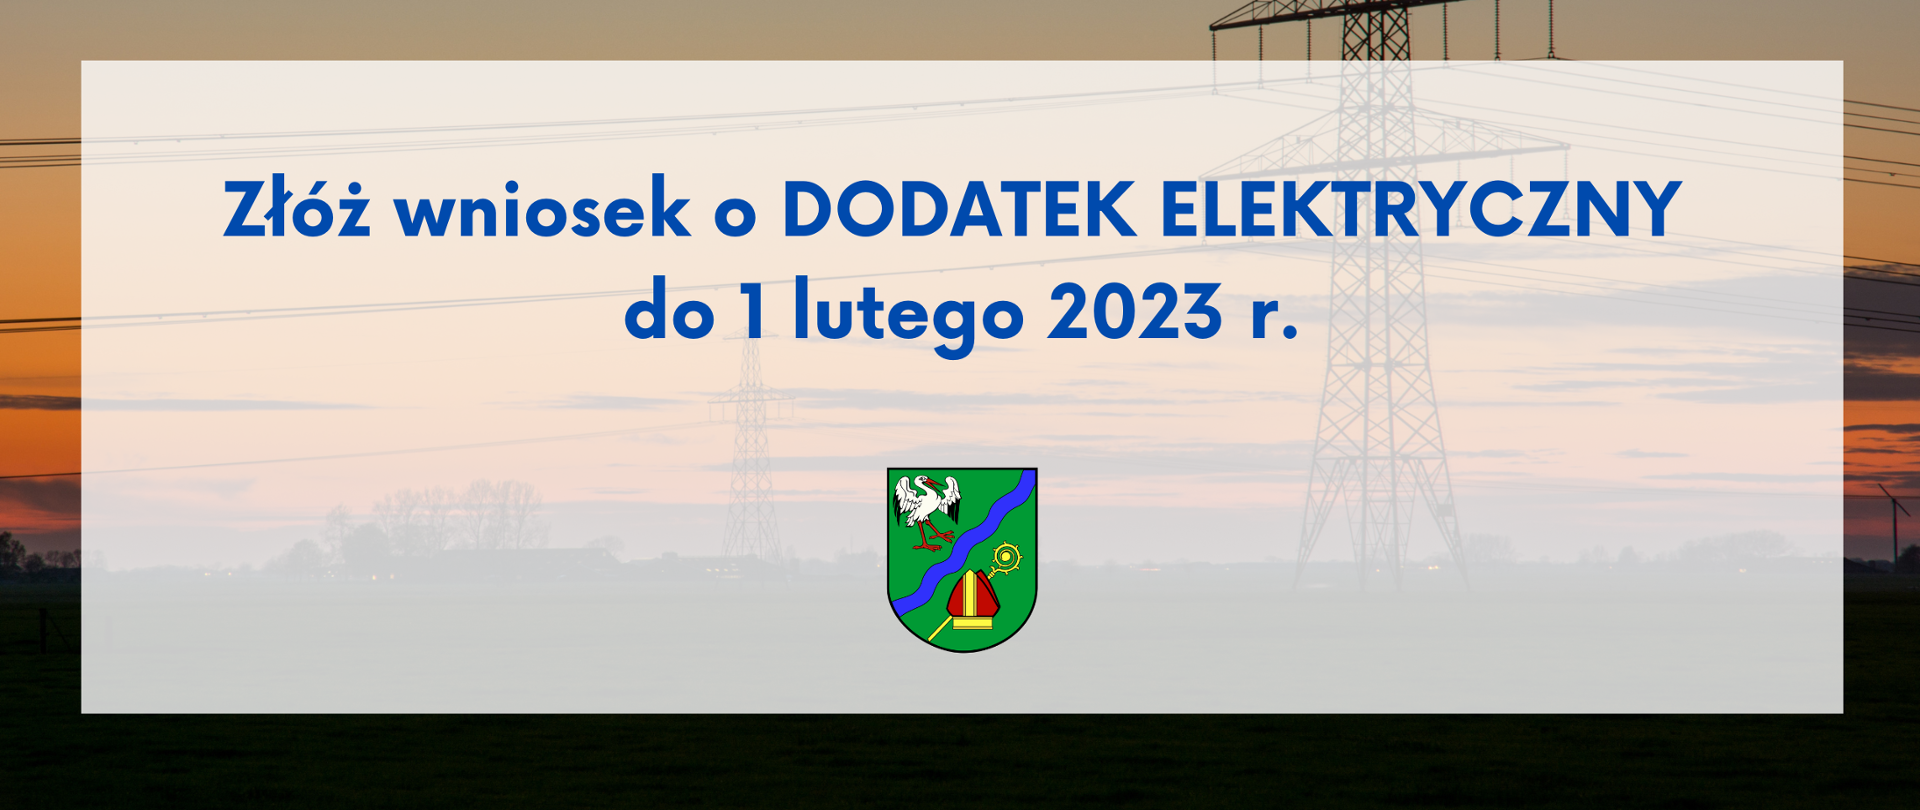 Tekst: Złóż wniosek o dodatek Elektryczny do 1 lutego 2023 r.